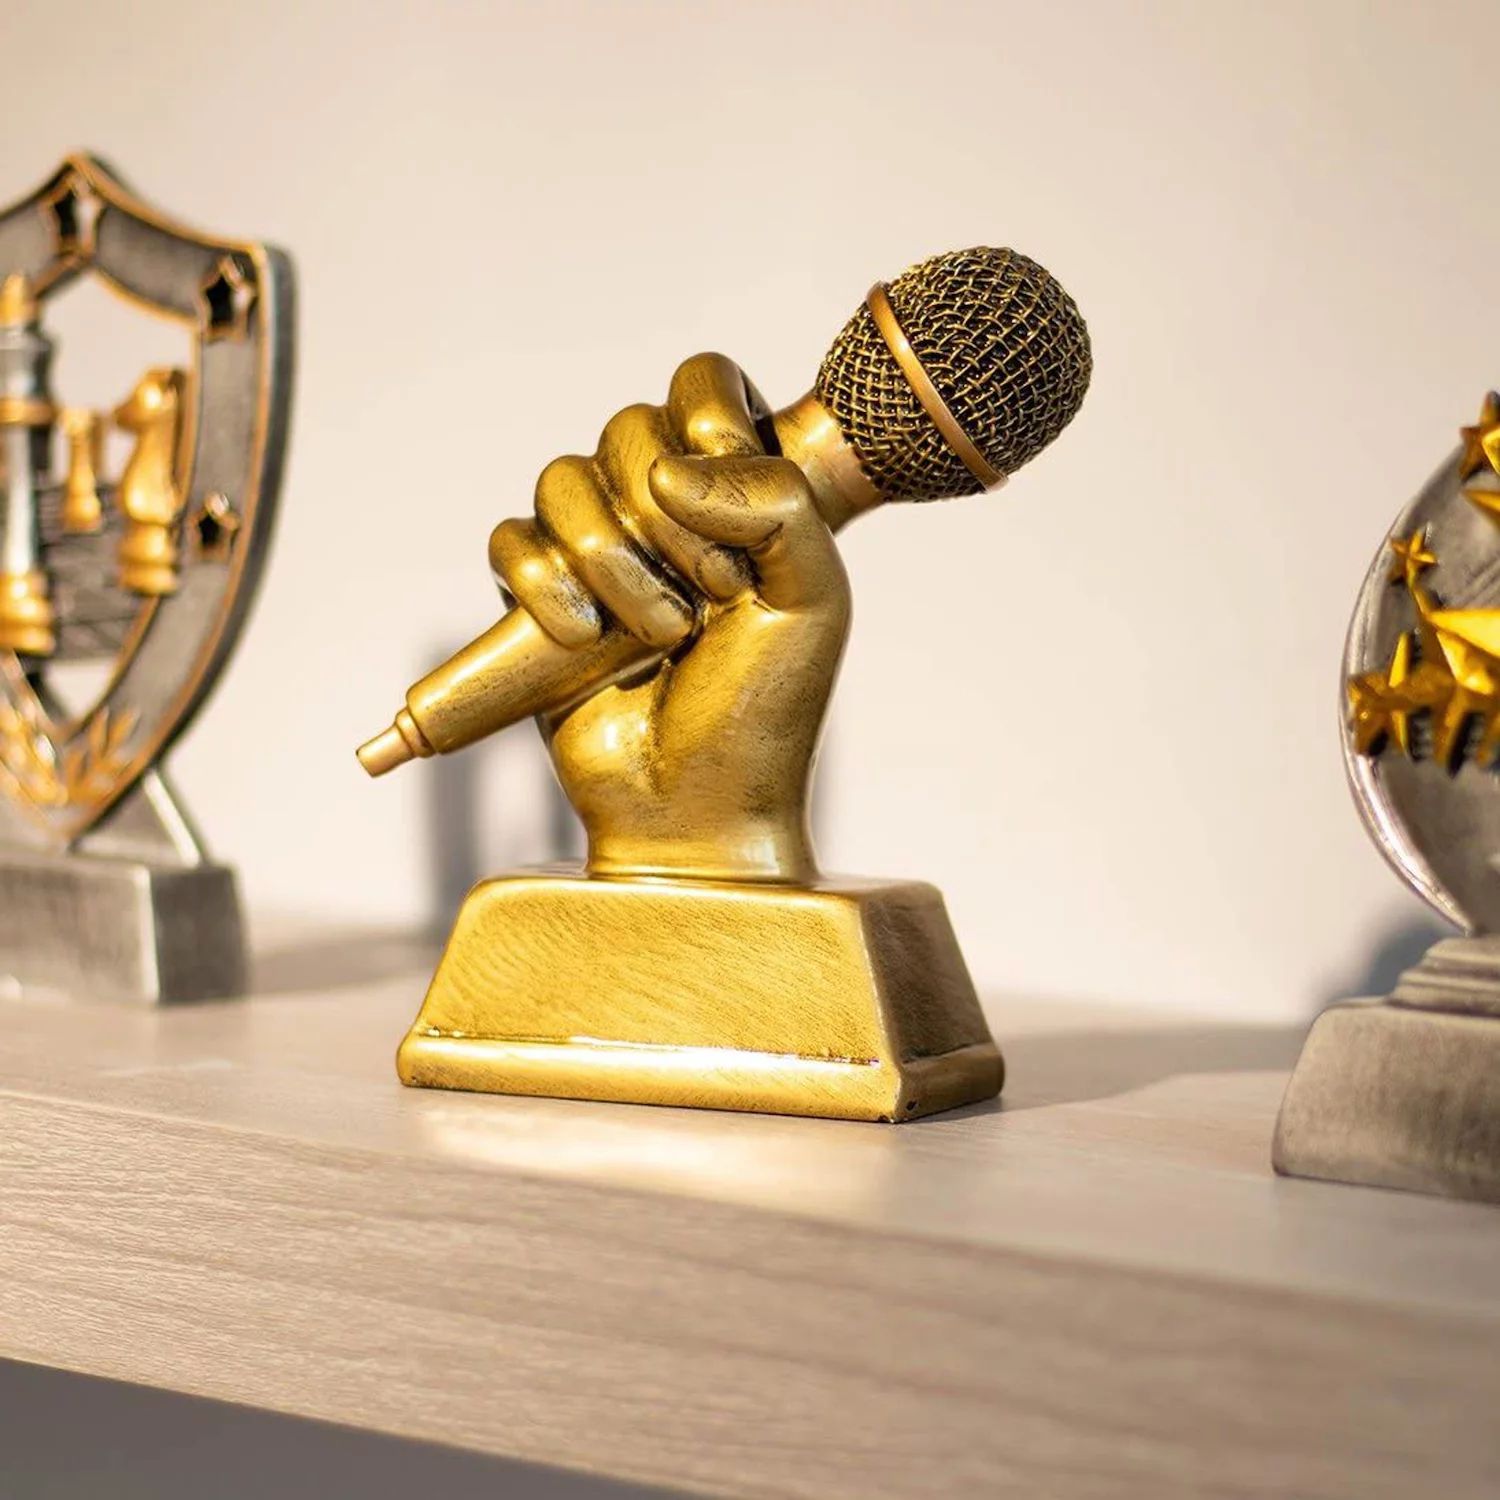 Приз «Золотой микрофон», Малый приз за пение из смолы для караоке, конкурсов, вечеринок (5,5 x 4,75 x 2,25 дюйма) Juvale